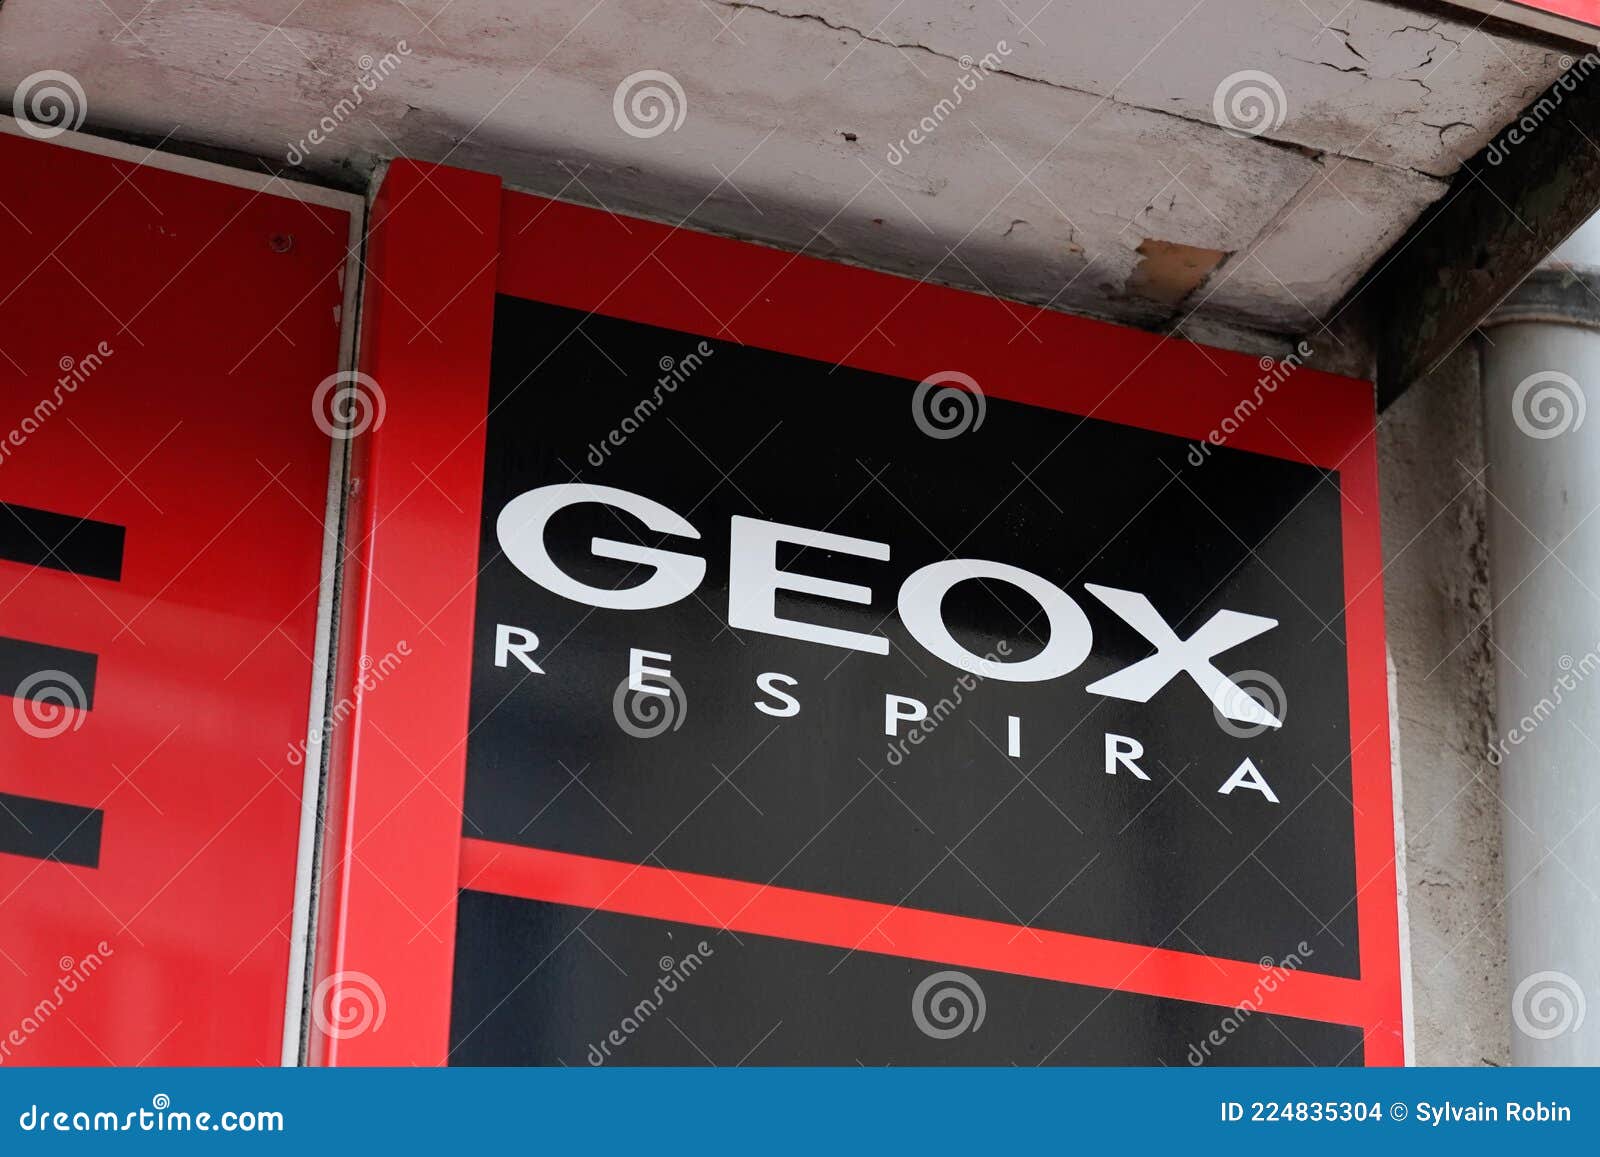 Geox Respira Marca De Texto Y Logotipo Marca De Zapatos Tienda De Calzado  Imagen de archivo editorial - Imagen de entrada, edificio: 224835304